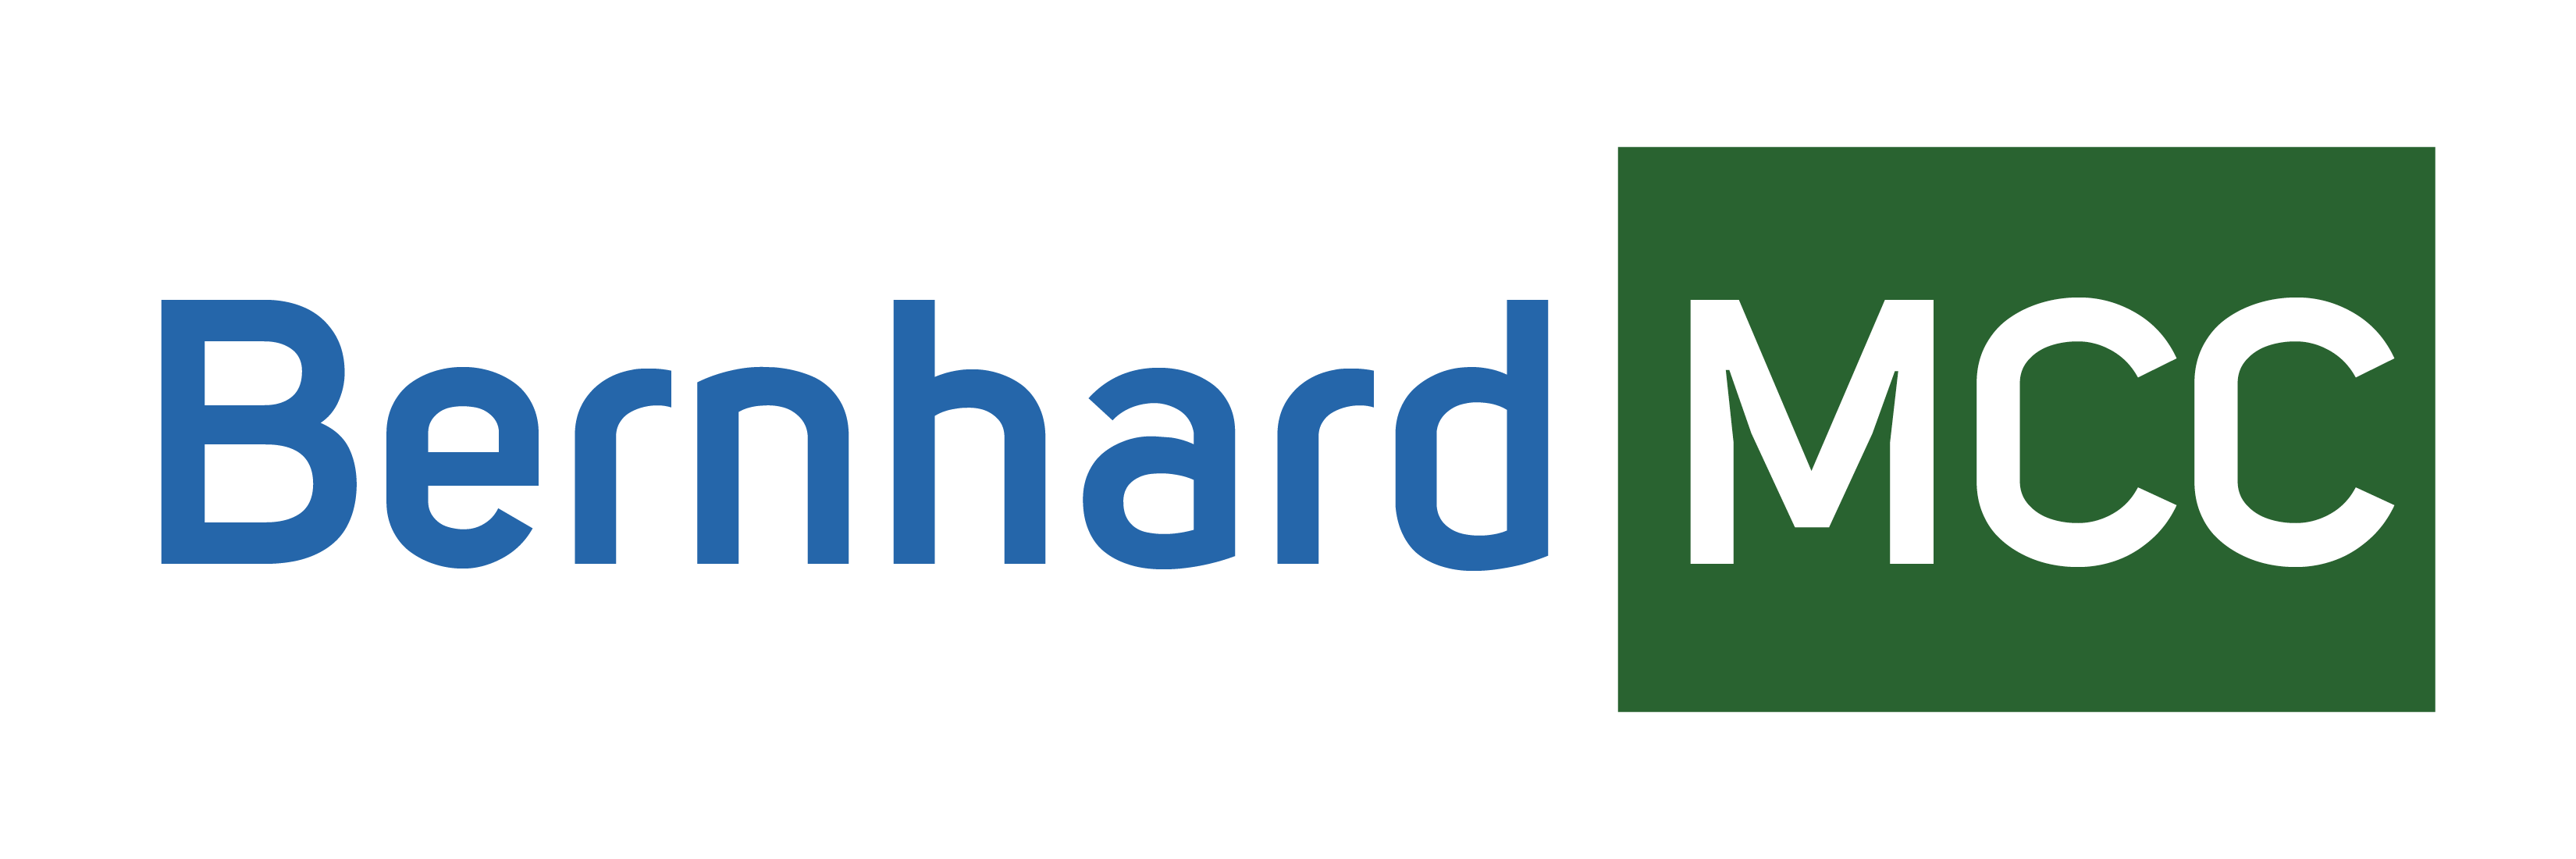 Bernhard MCC Logo